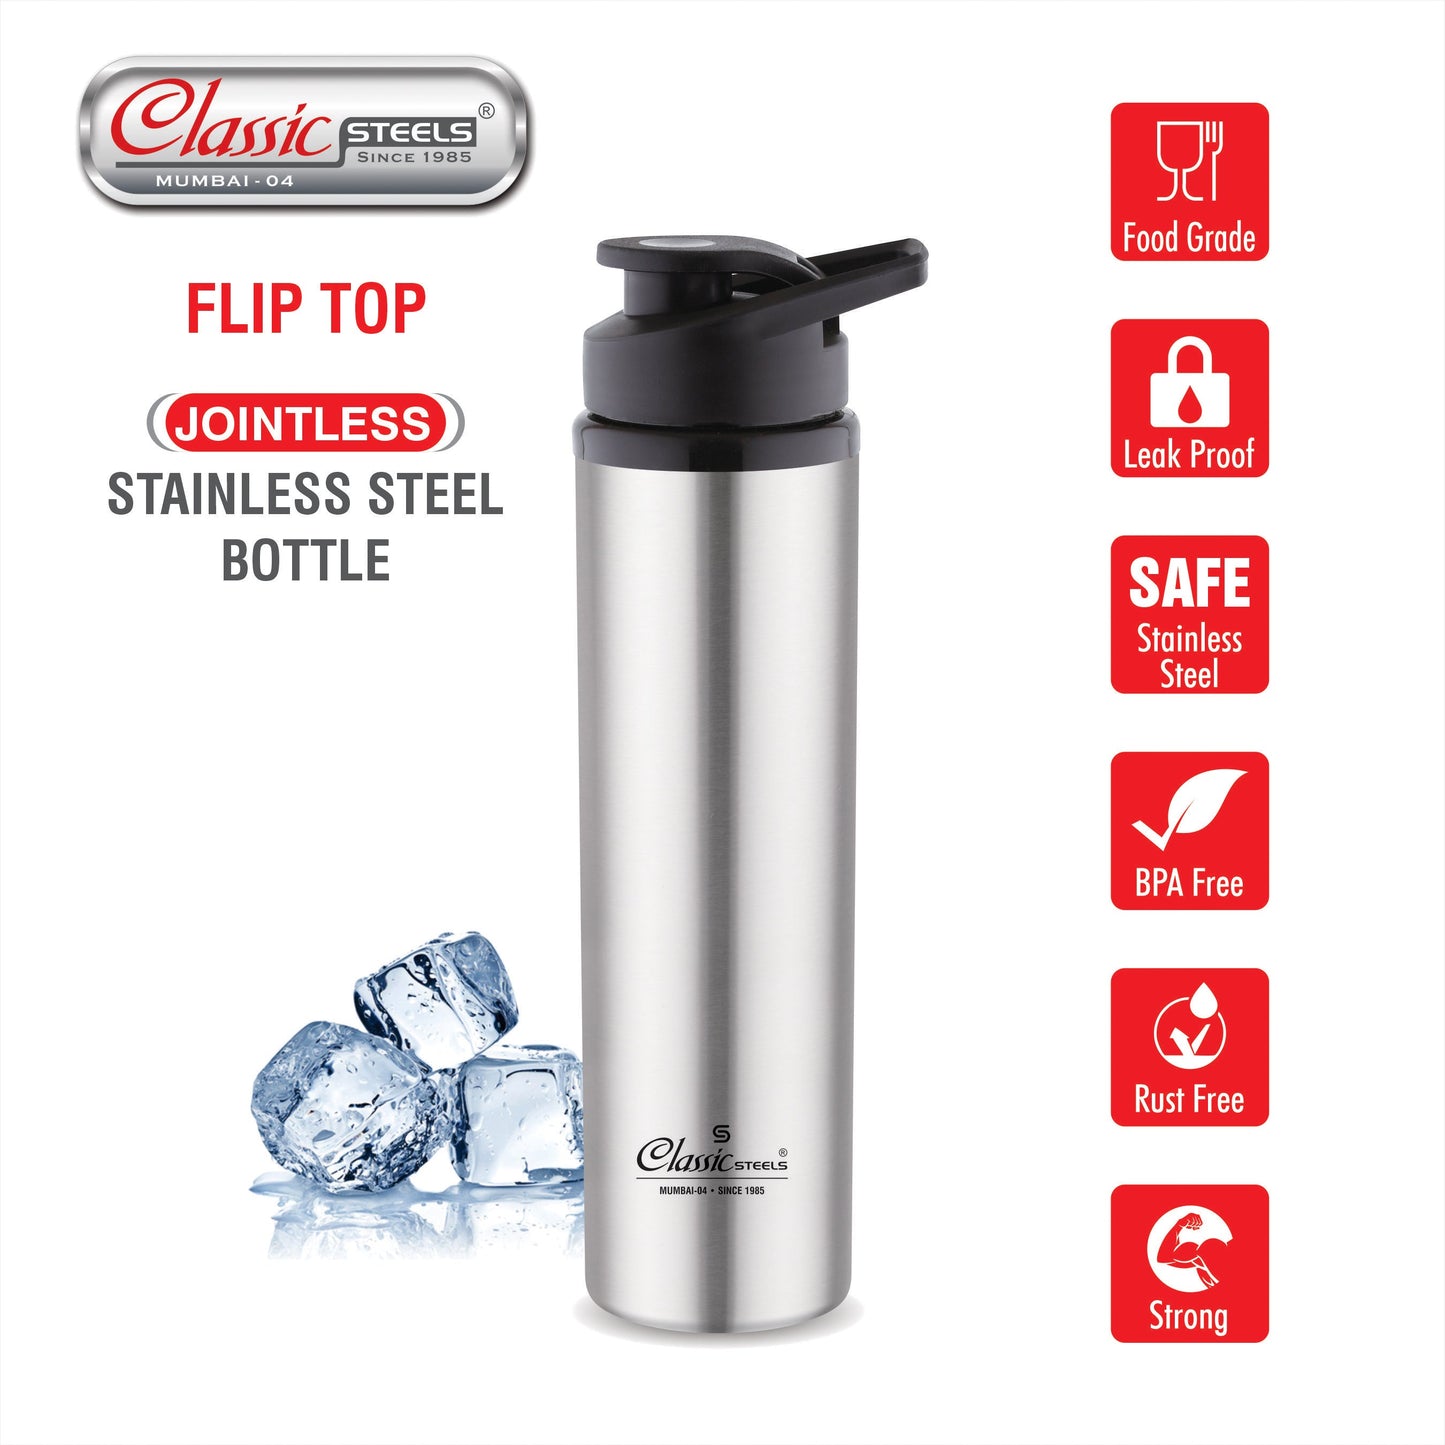 Flip Top Single Wall Stainless Steel Water Bottle